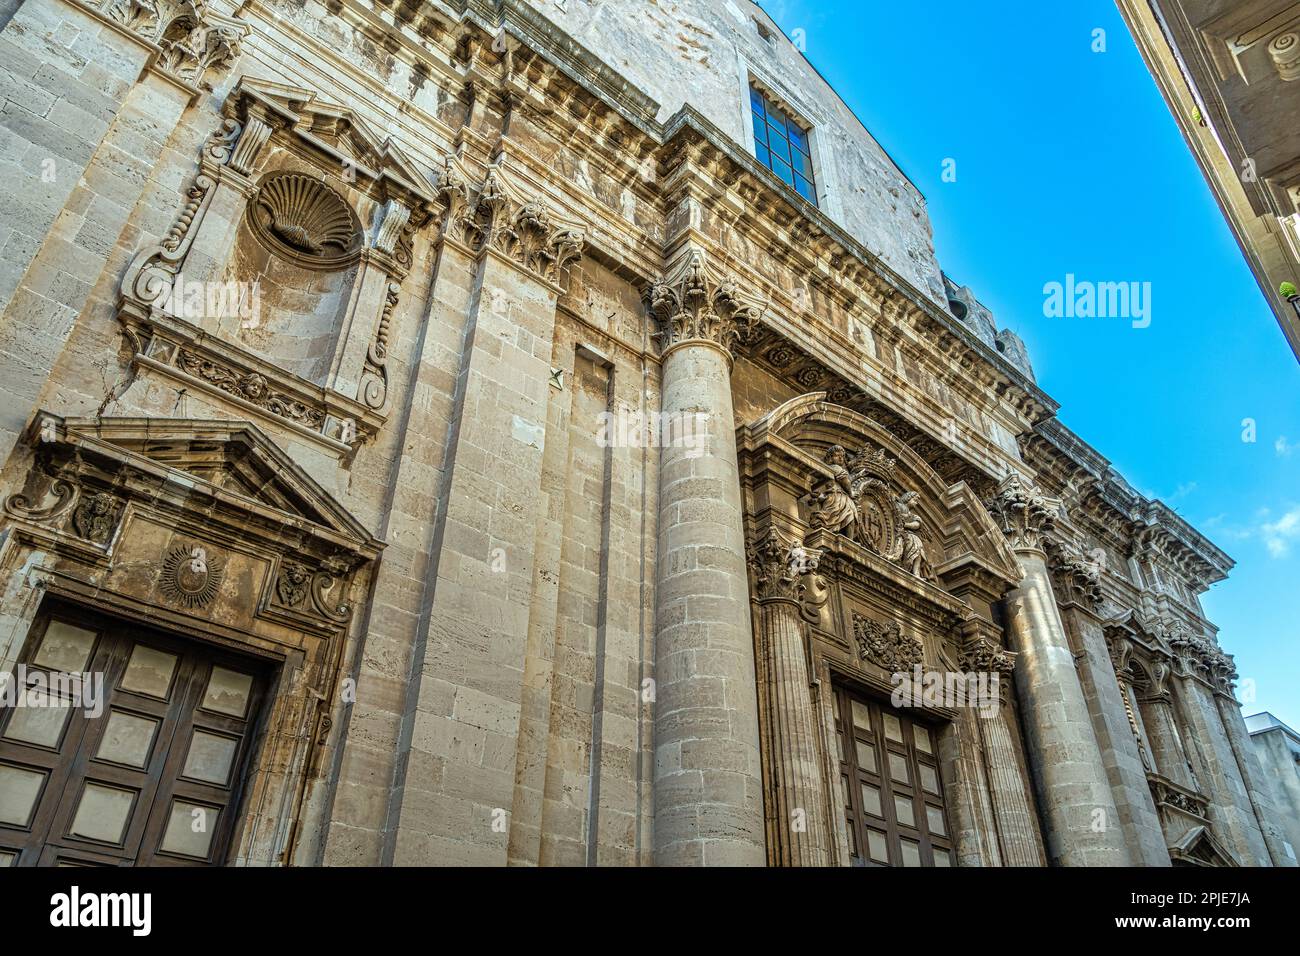 La chiesa del Collegio dei Gesuiti ha una bella facciata barocca divisa in due ordini. Siracusa, Sicilia, Italia, Europa Foto Stock